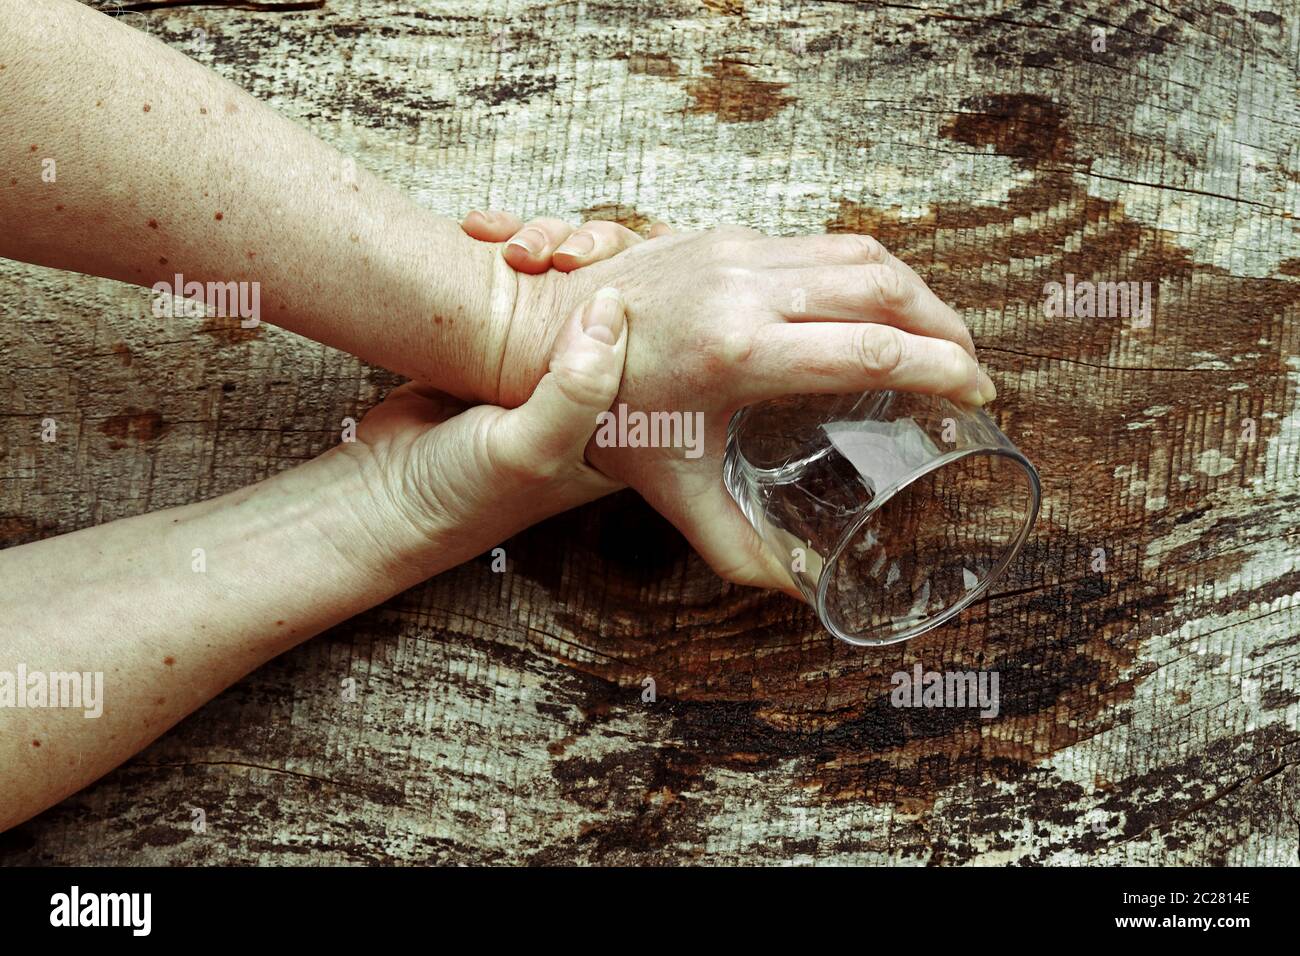 Eine Frau mit Parkinson schüttelt ihre Hände so stark, dass sie kein Glas mehr halten kann. Stark zitternde Hände einer älteren Frau Stockfoto